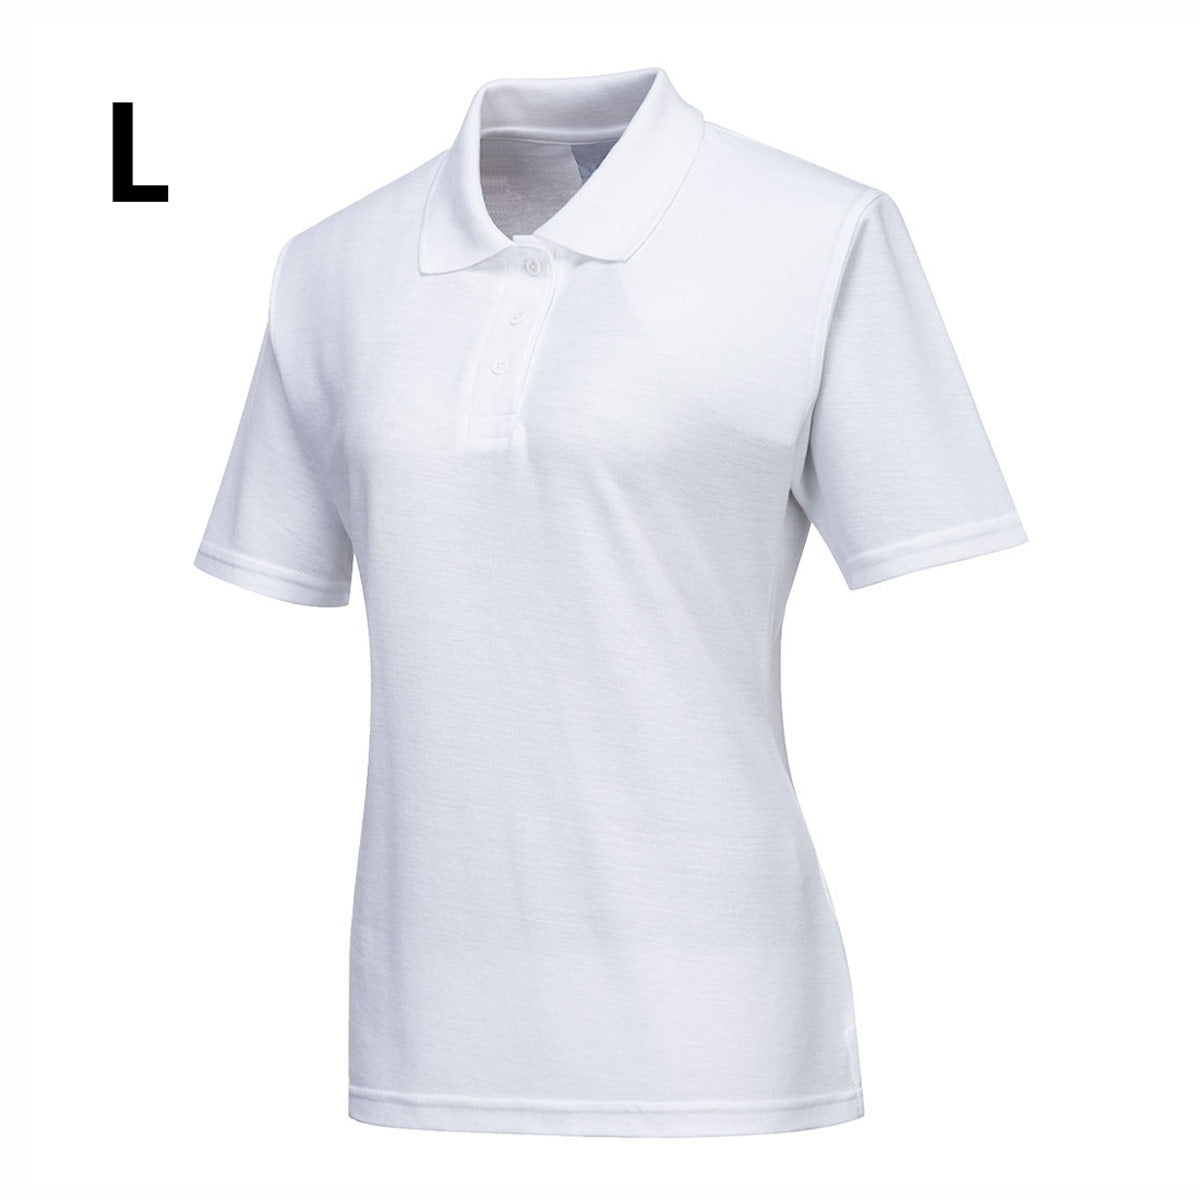 Polo shirt til damer - hvid - størrelse: L